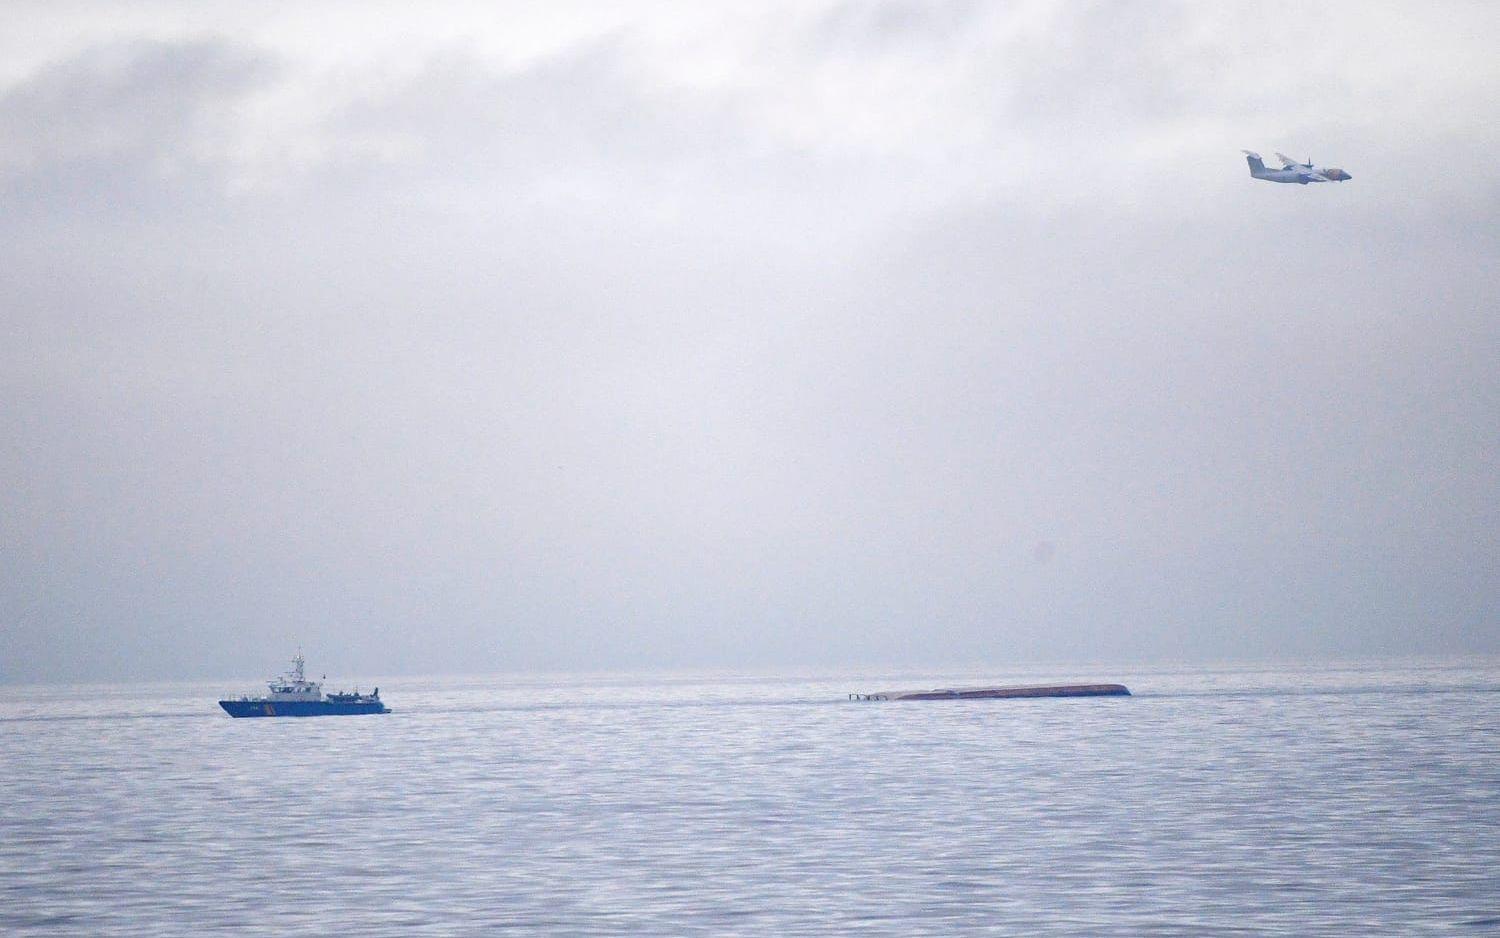 Det danska fartyget Karin Hoej har kapsejsat och ligger upp och ned i vattnet. 